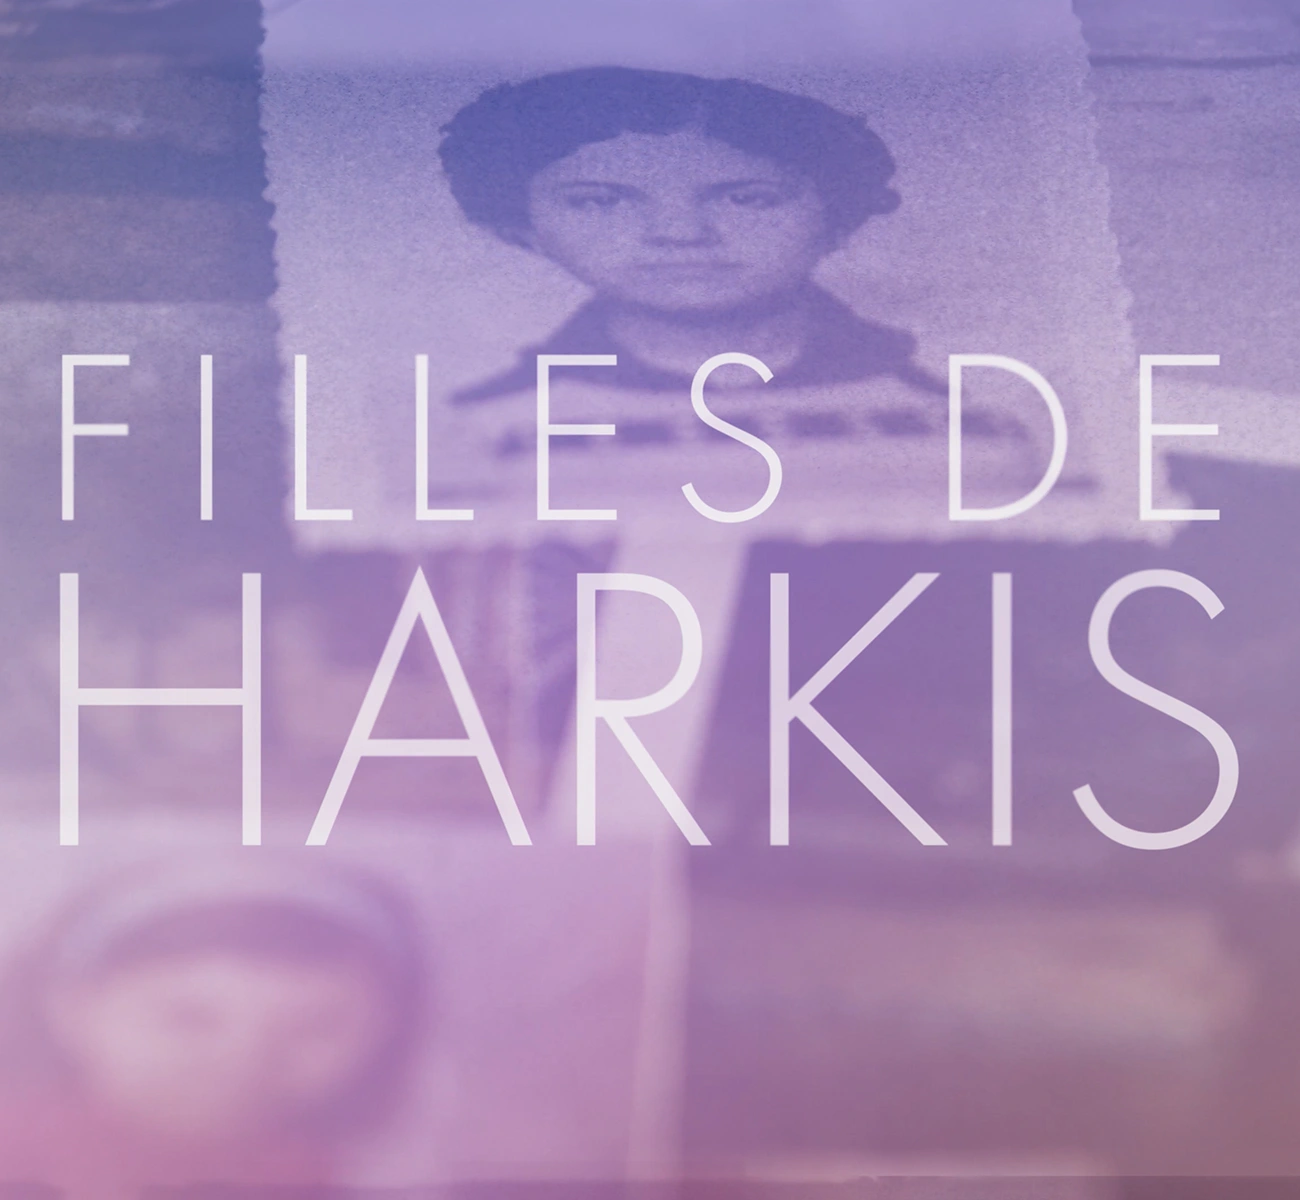 Image couverture vidéo motion design 2D générique documentaire Filles de harkis page portfolio